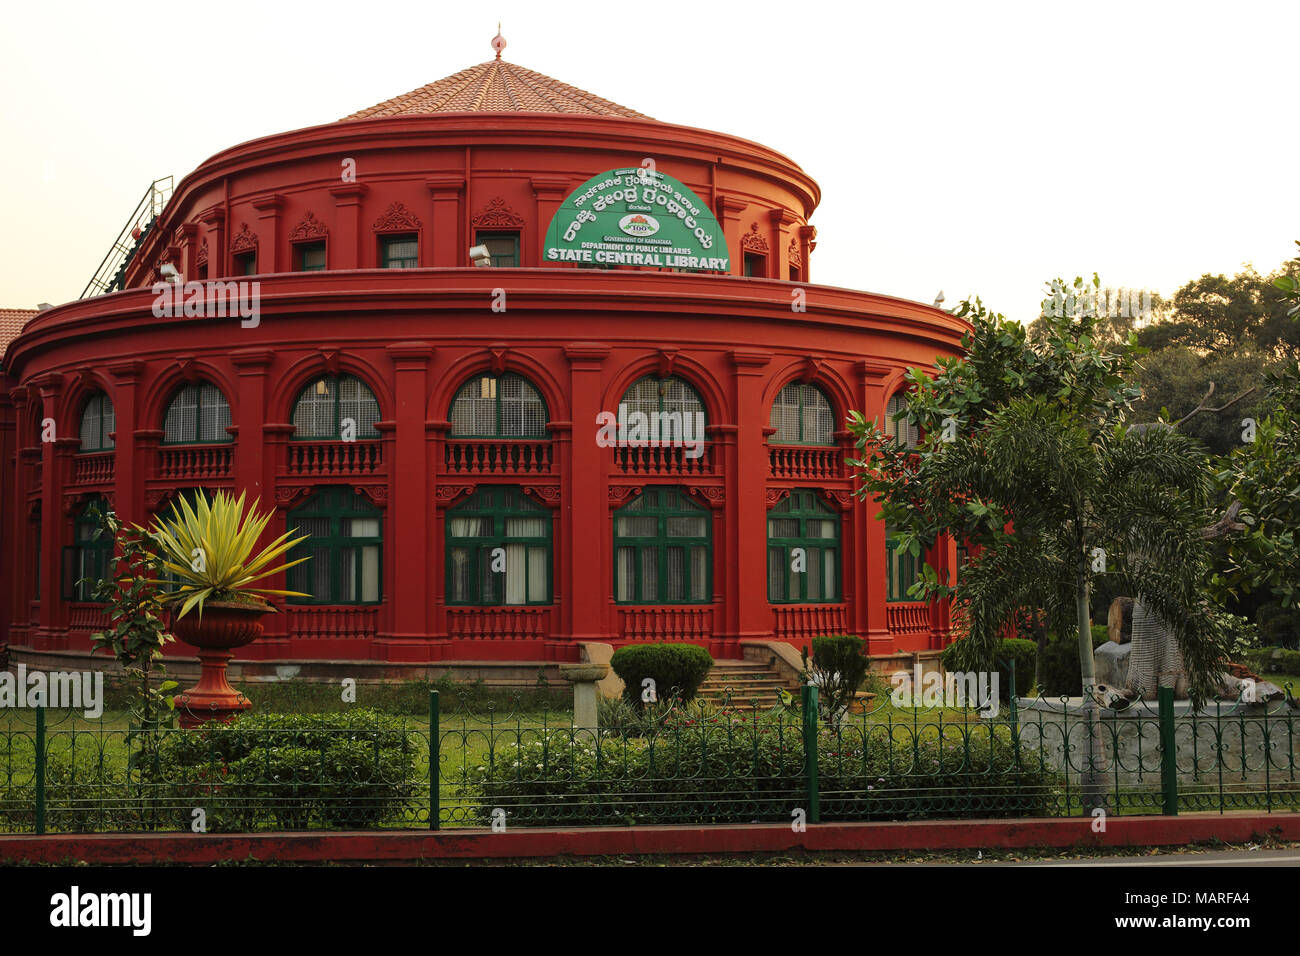 Bangalore, Inde - le 19 octobre 2016 : une vue de côté de la bibliothèque centrale de l'État, un bâtiment rouge en style néo-classique, se présente comme un établissement emblématique. Banque D'Images